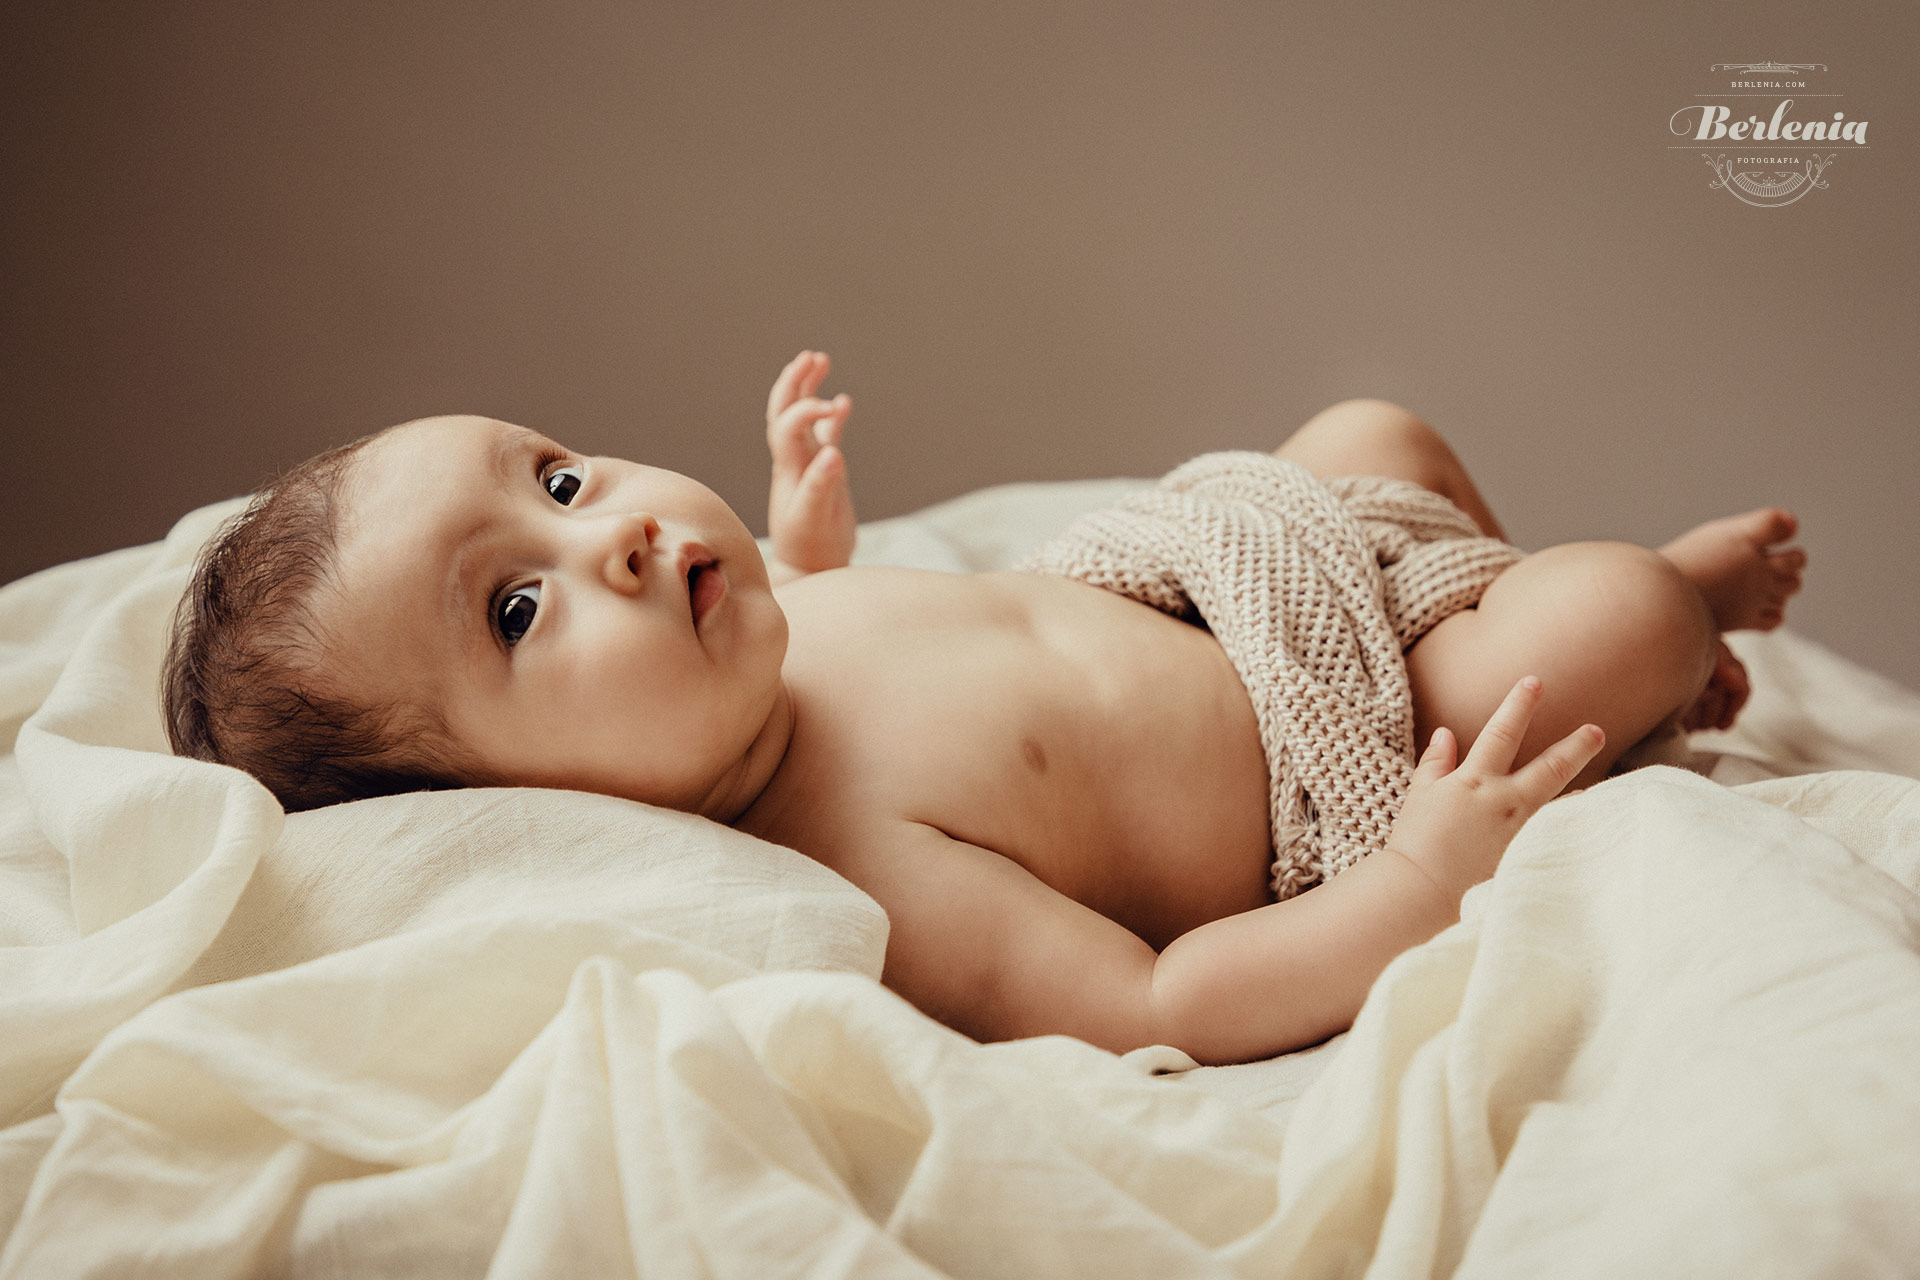 Fotografía de bebé de 3 meses - Sesión de fotos en estudio - Villa Urquiza, CABA, Buenos Aires, Argentina - Berlenia Fotografía - 12